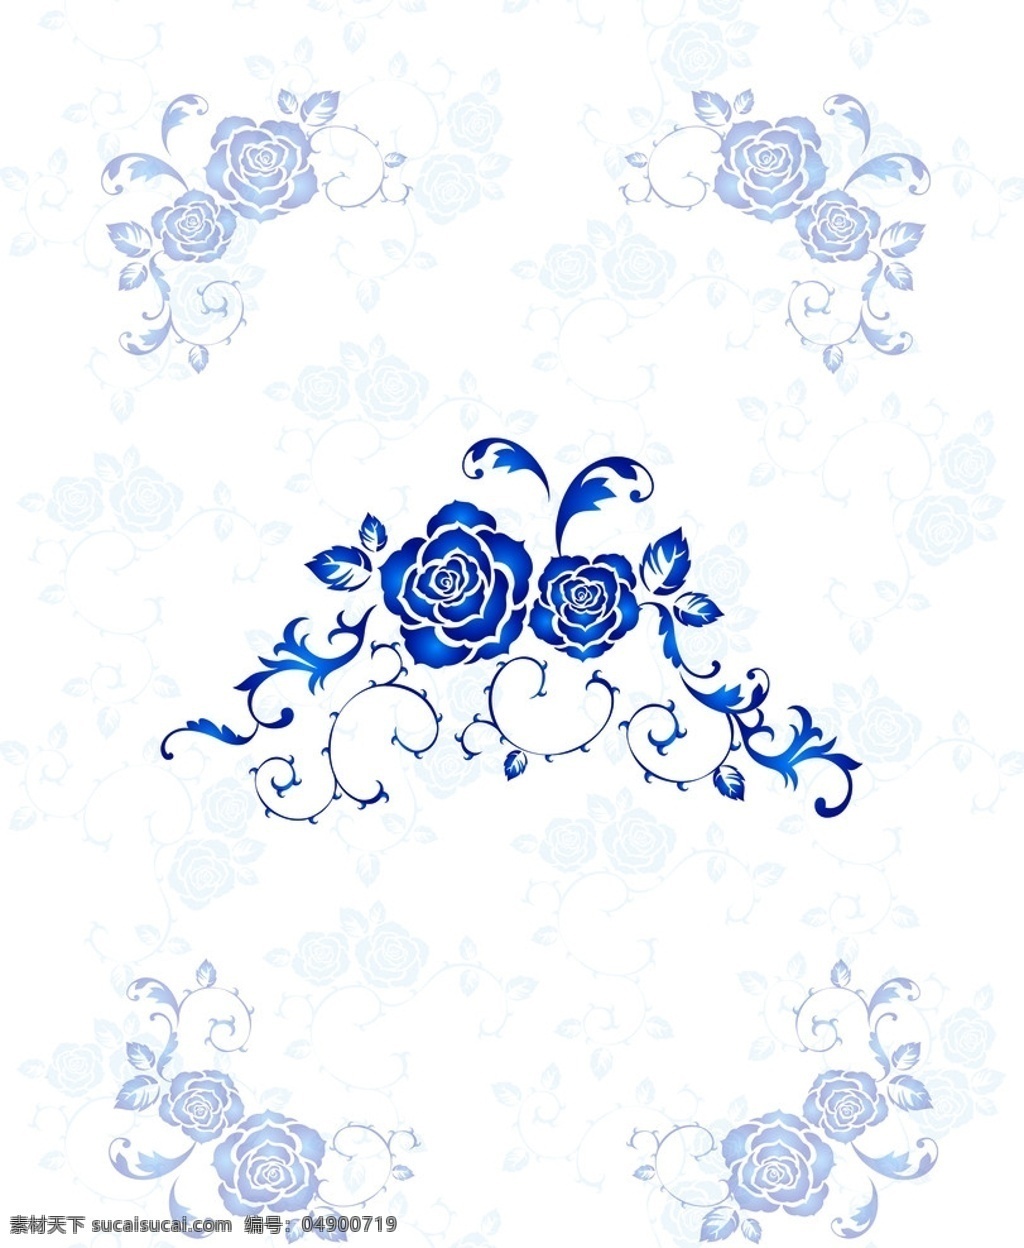 蓝玫瑰花纹 蓝玫瑰 玫瑰花 纹 经典花纹 时尚花纹 底纹 花边 移门 对称 花边花纹 底纹边框